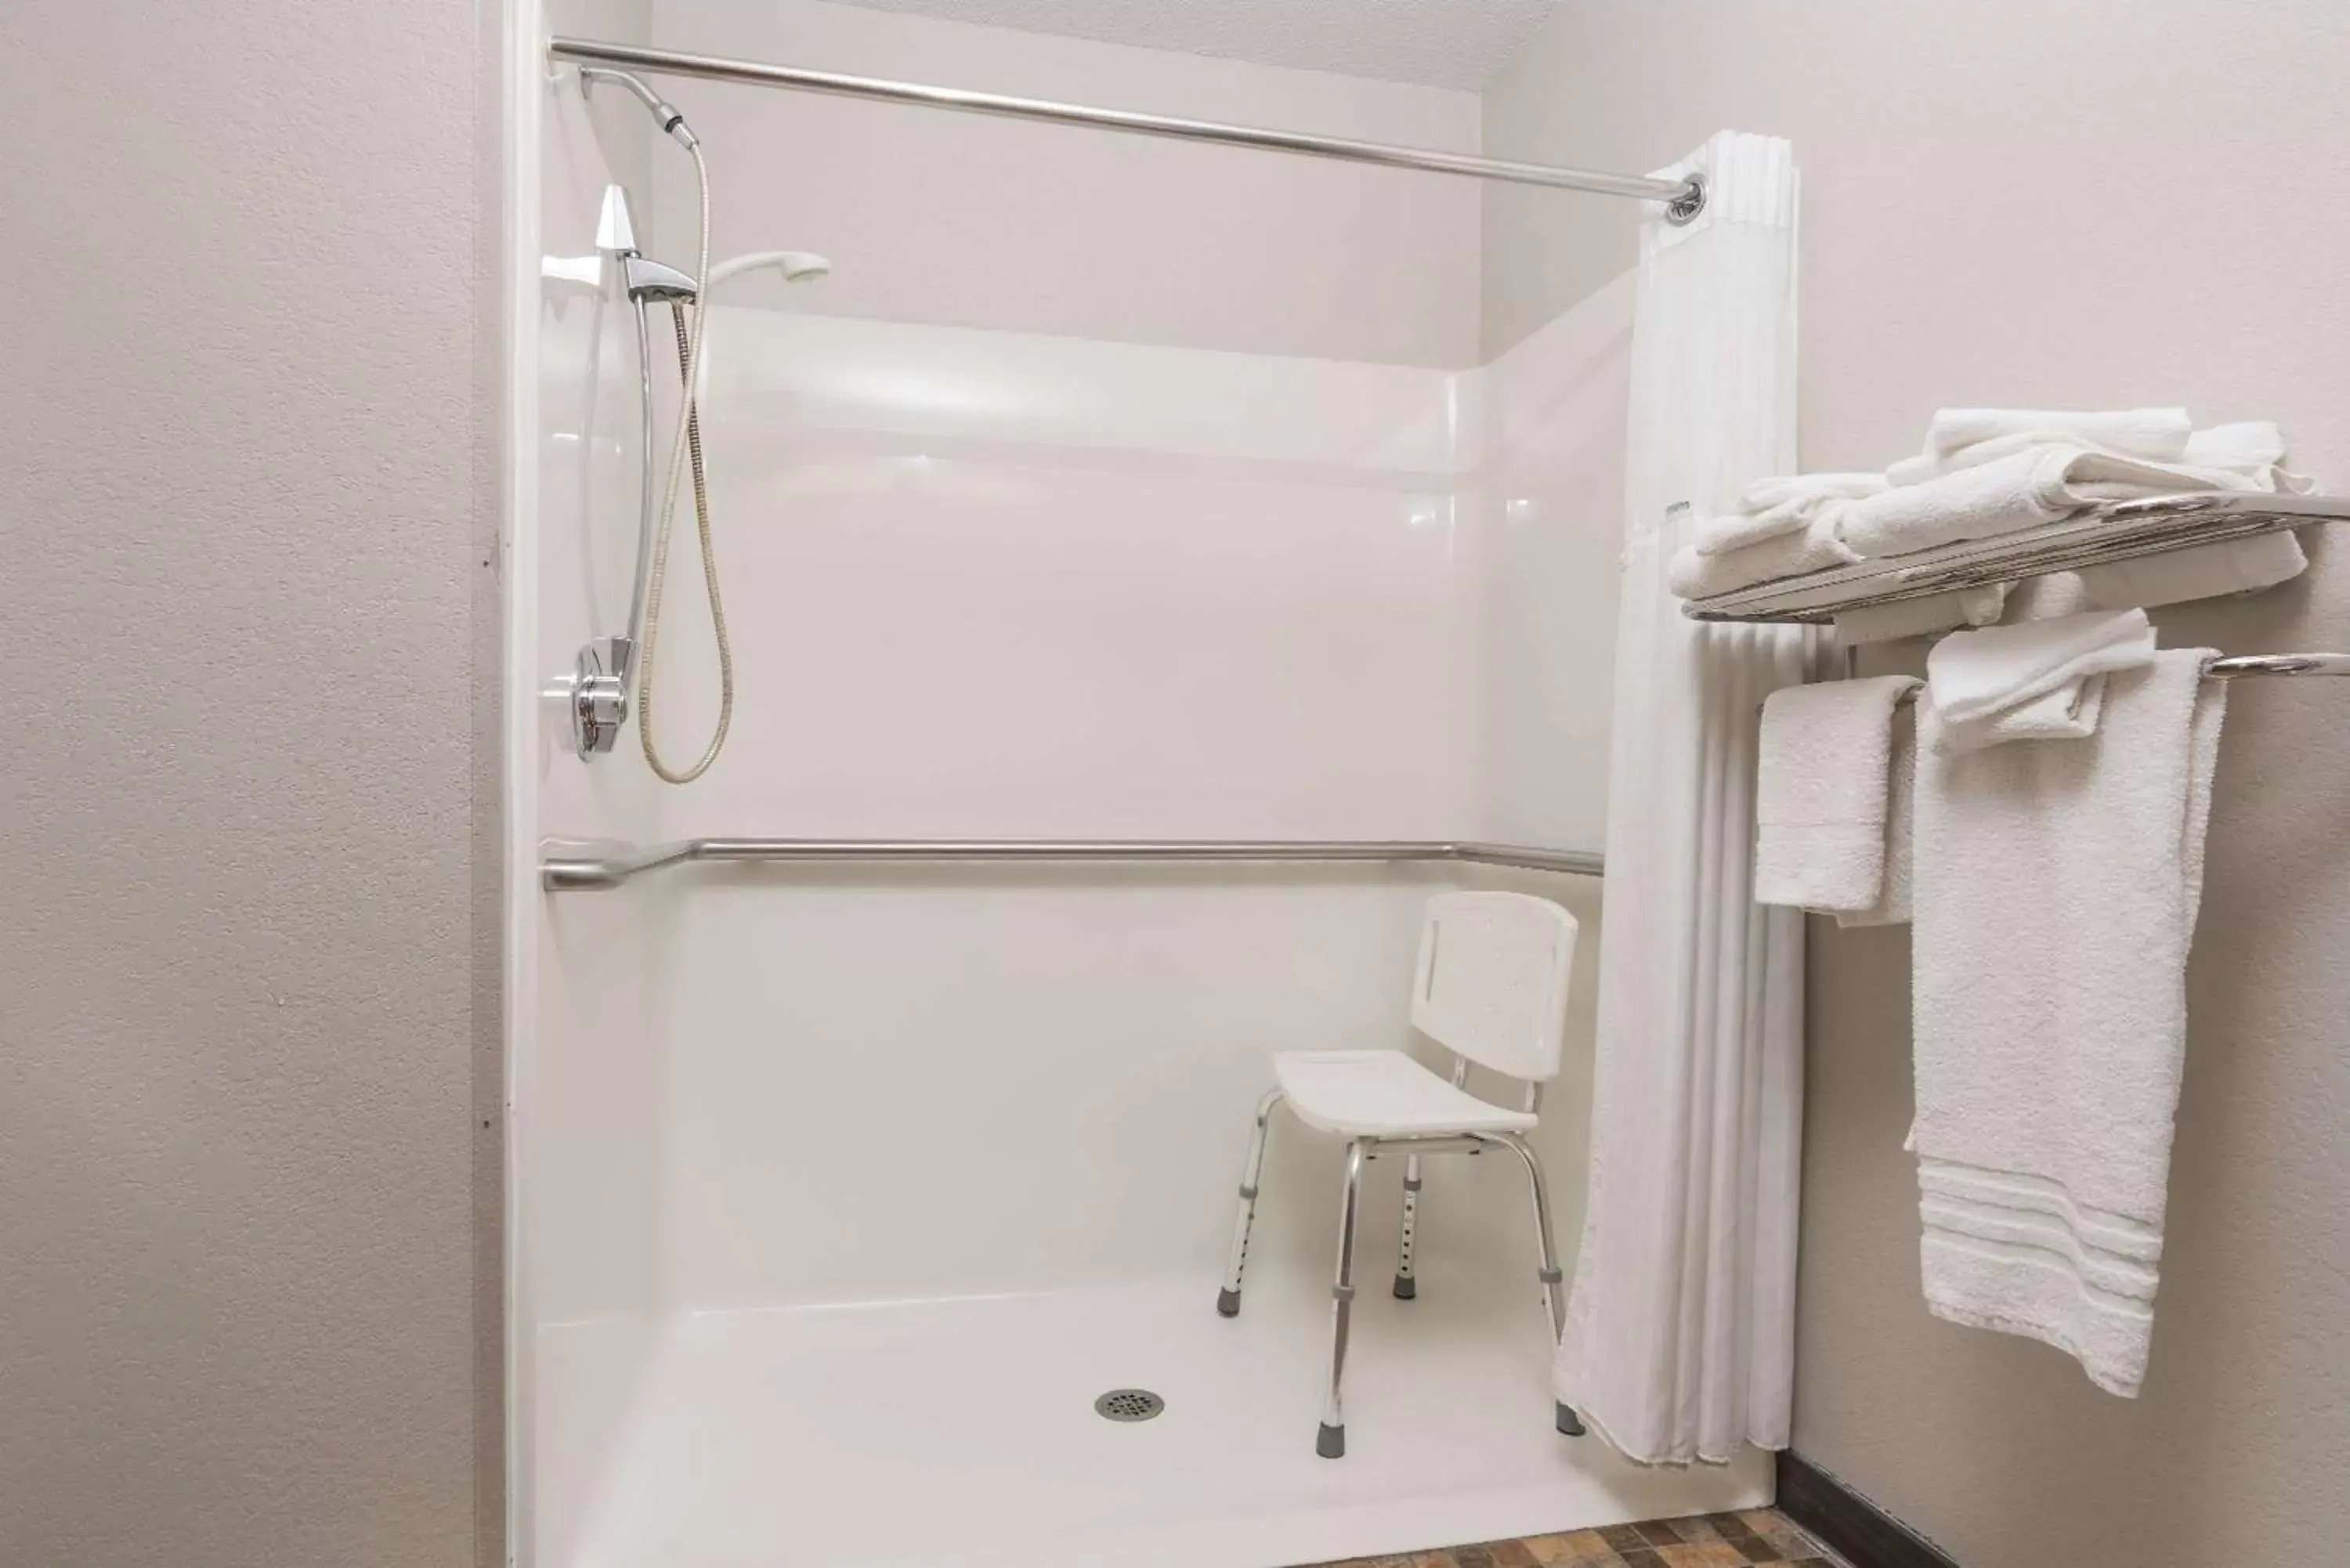 Bathroom in Microtel Inn & Suites by Wyndham Springfield